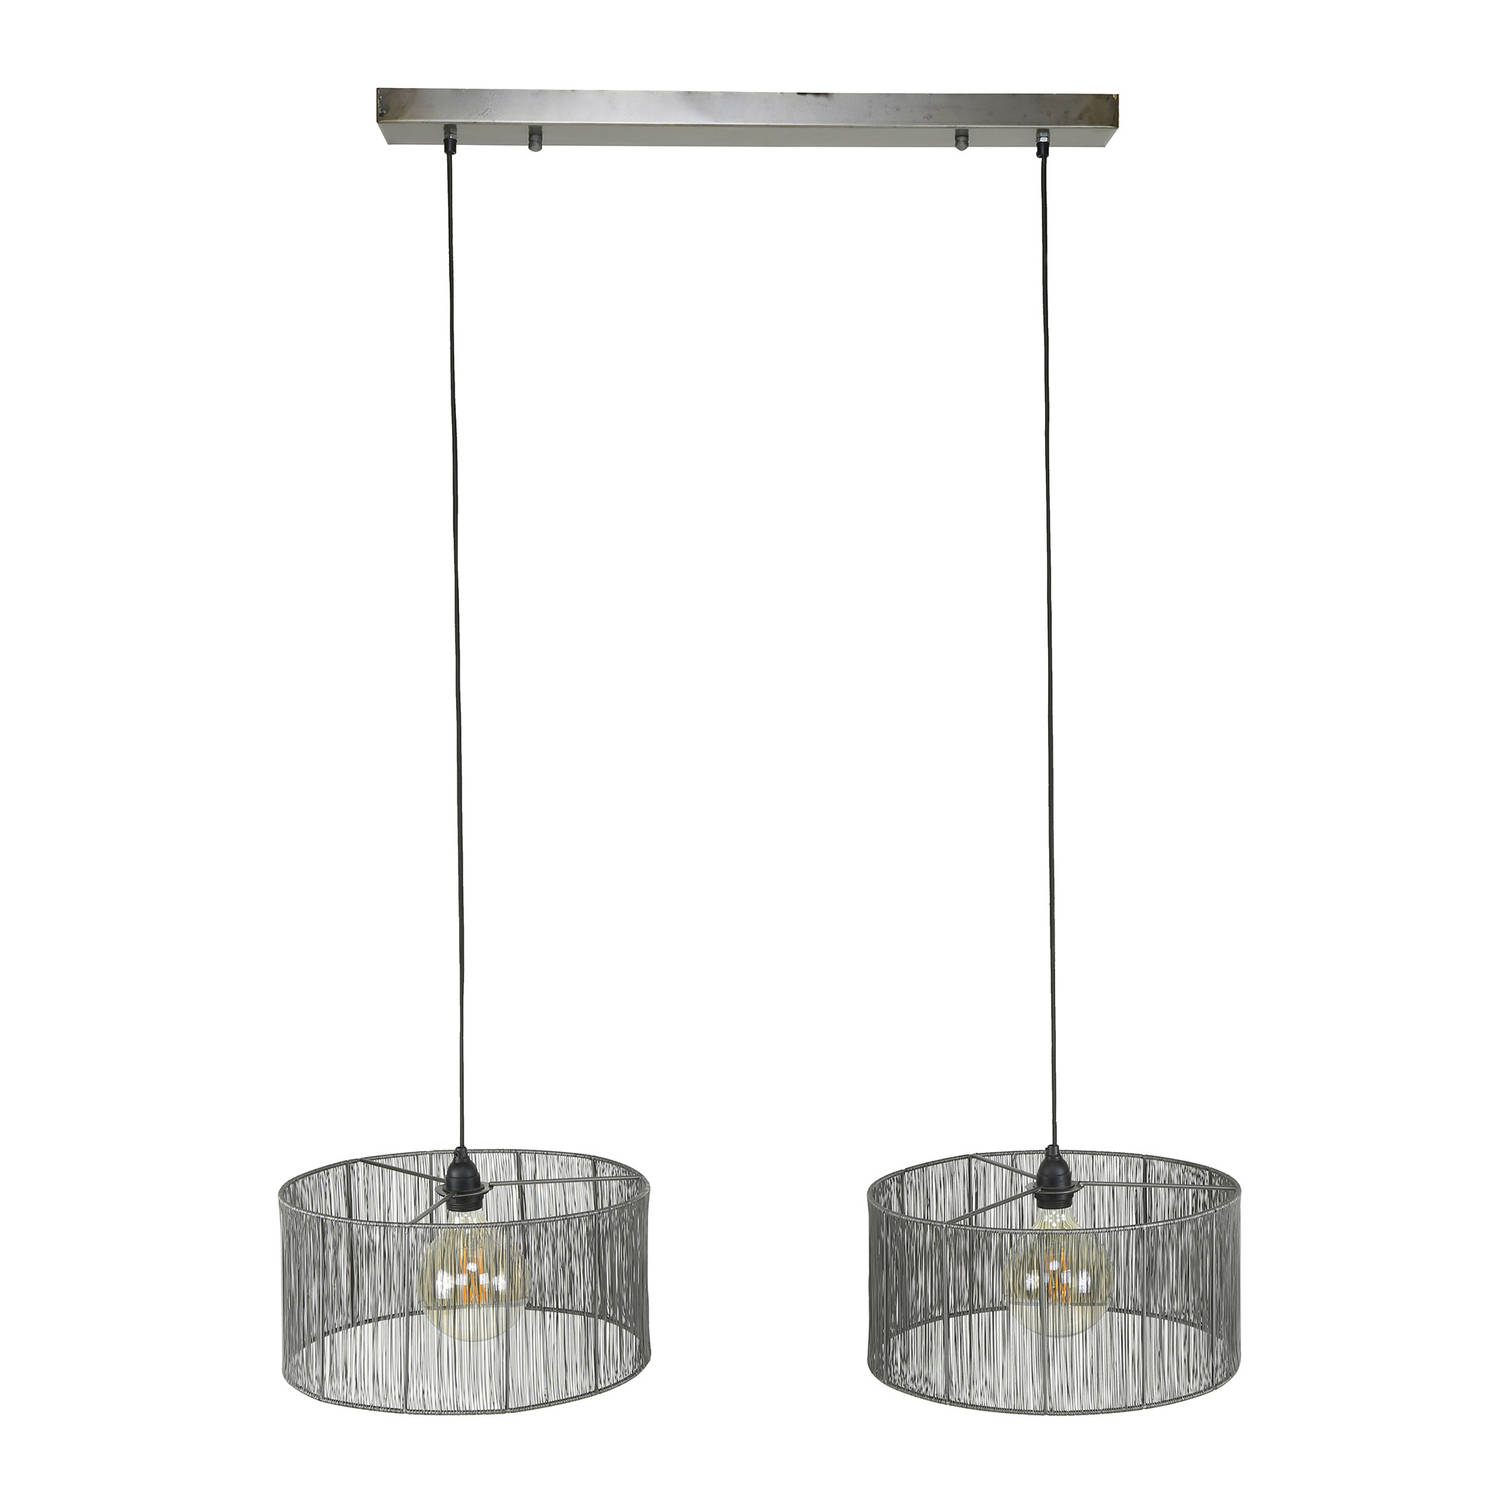 Giga Meubel Gm Hanglamp 45x120x150cm - Metaal - Lamp Stringshade Metal